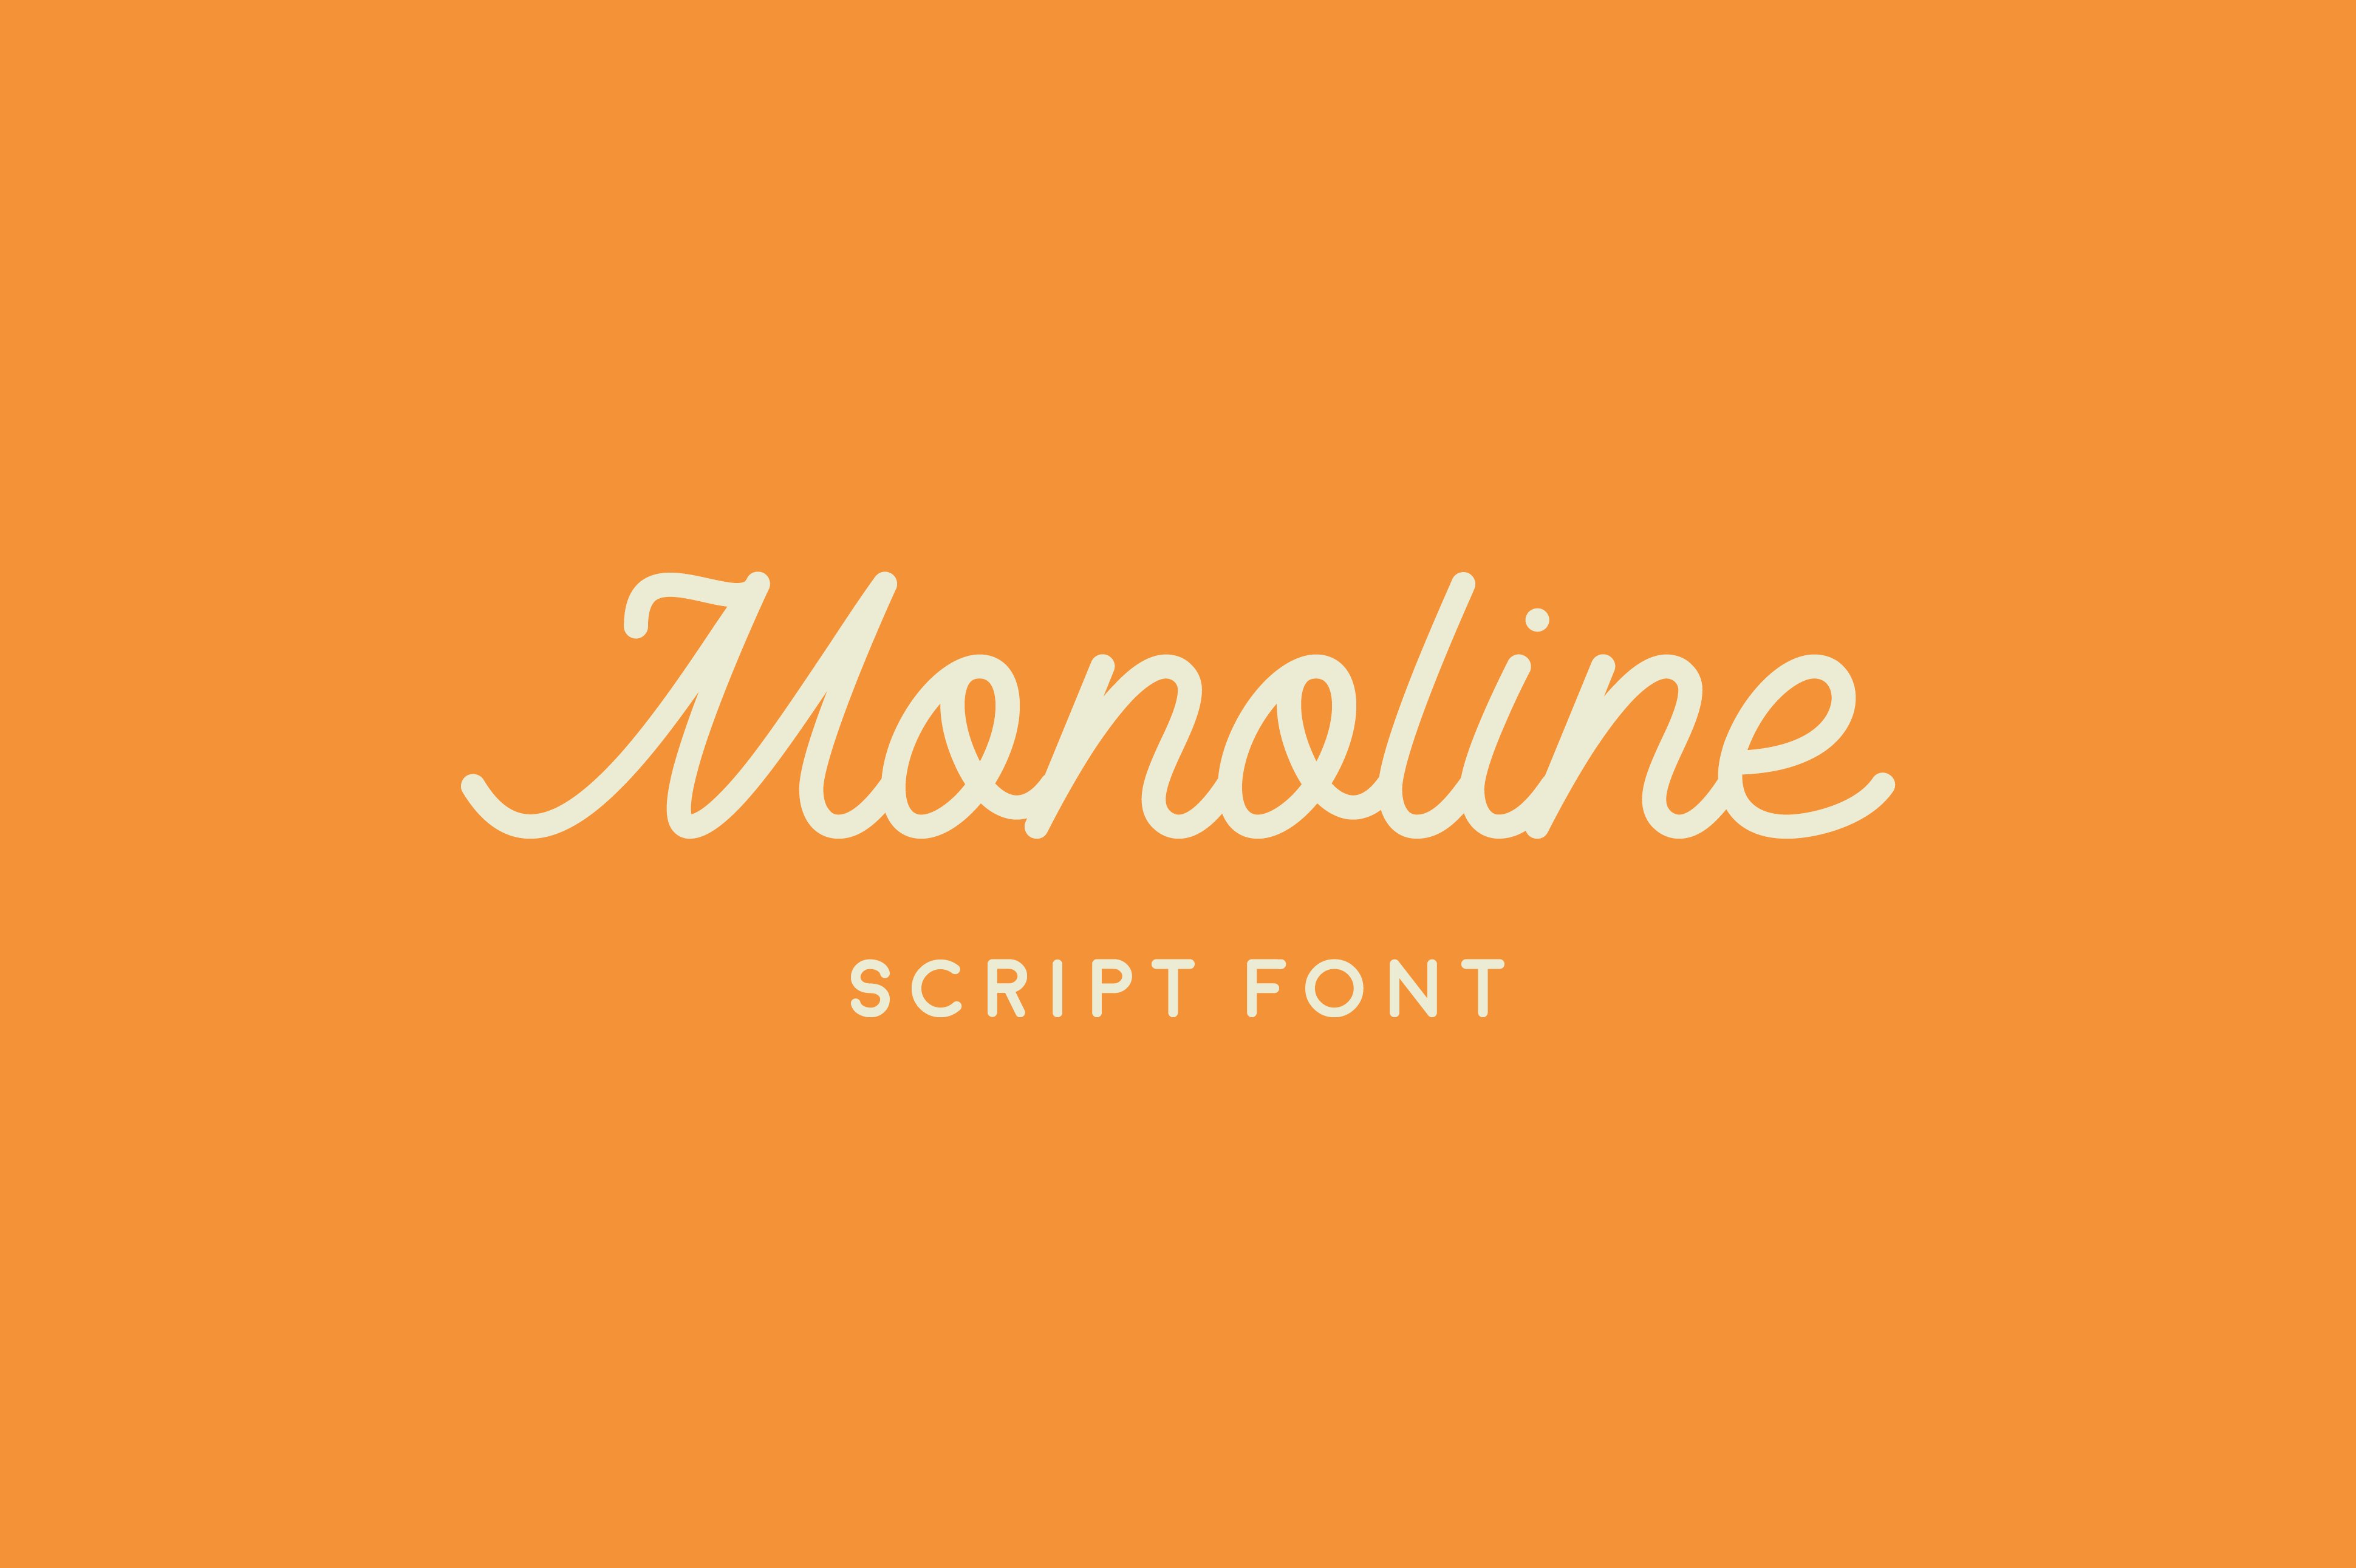 Przykład czcionki Monoline Script